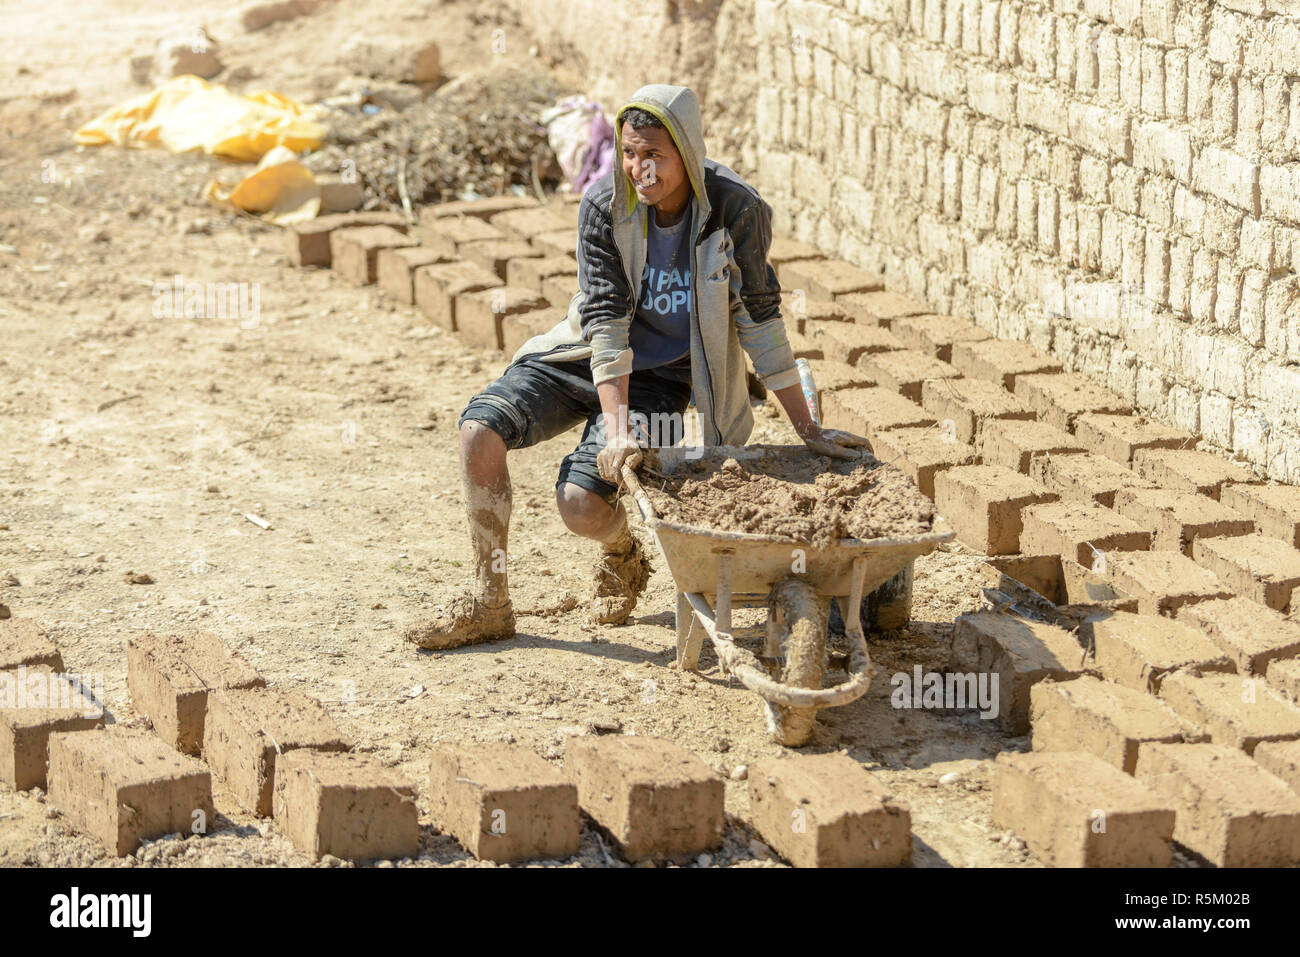 01-03-15, Marrakech, Marocco. Fare mattoni di fango e paglia nel sub-Atlas regione berbera. Mattoni di essiccazione al sole. Foto: © Simon Grosset Foto Stock